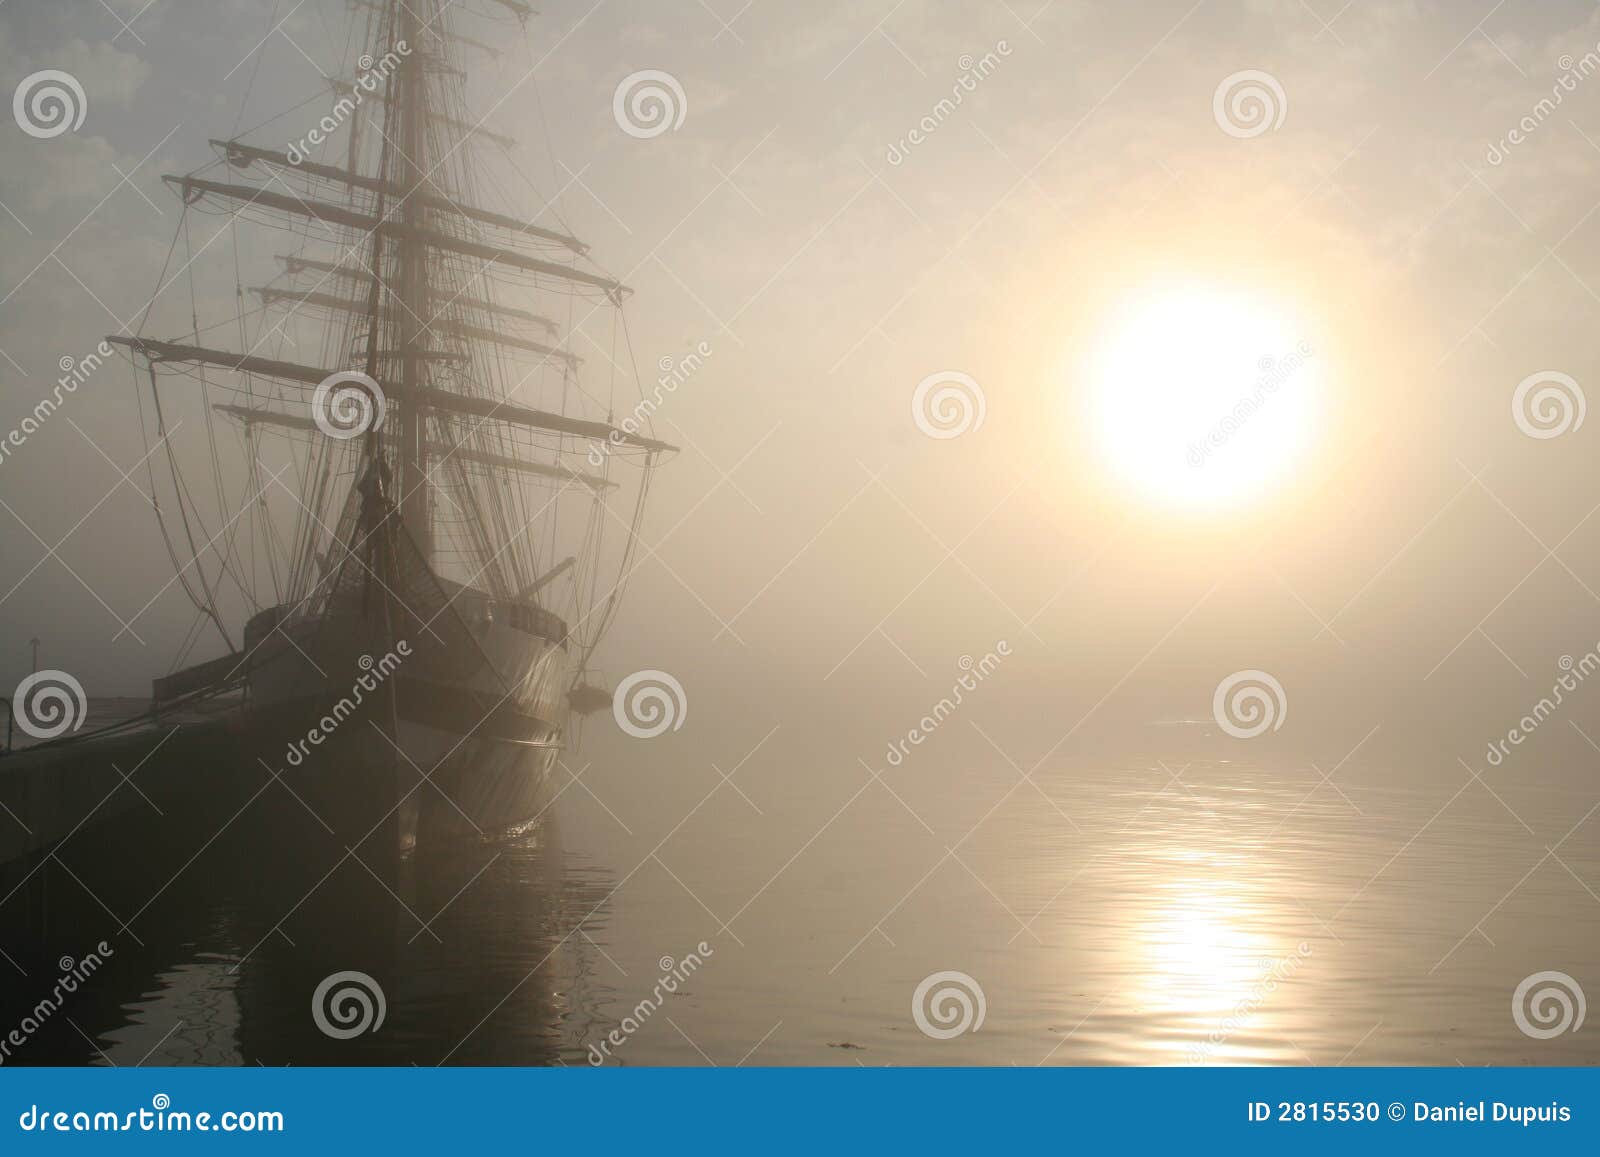 tall ship at sunrise